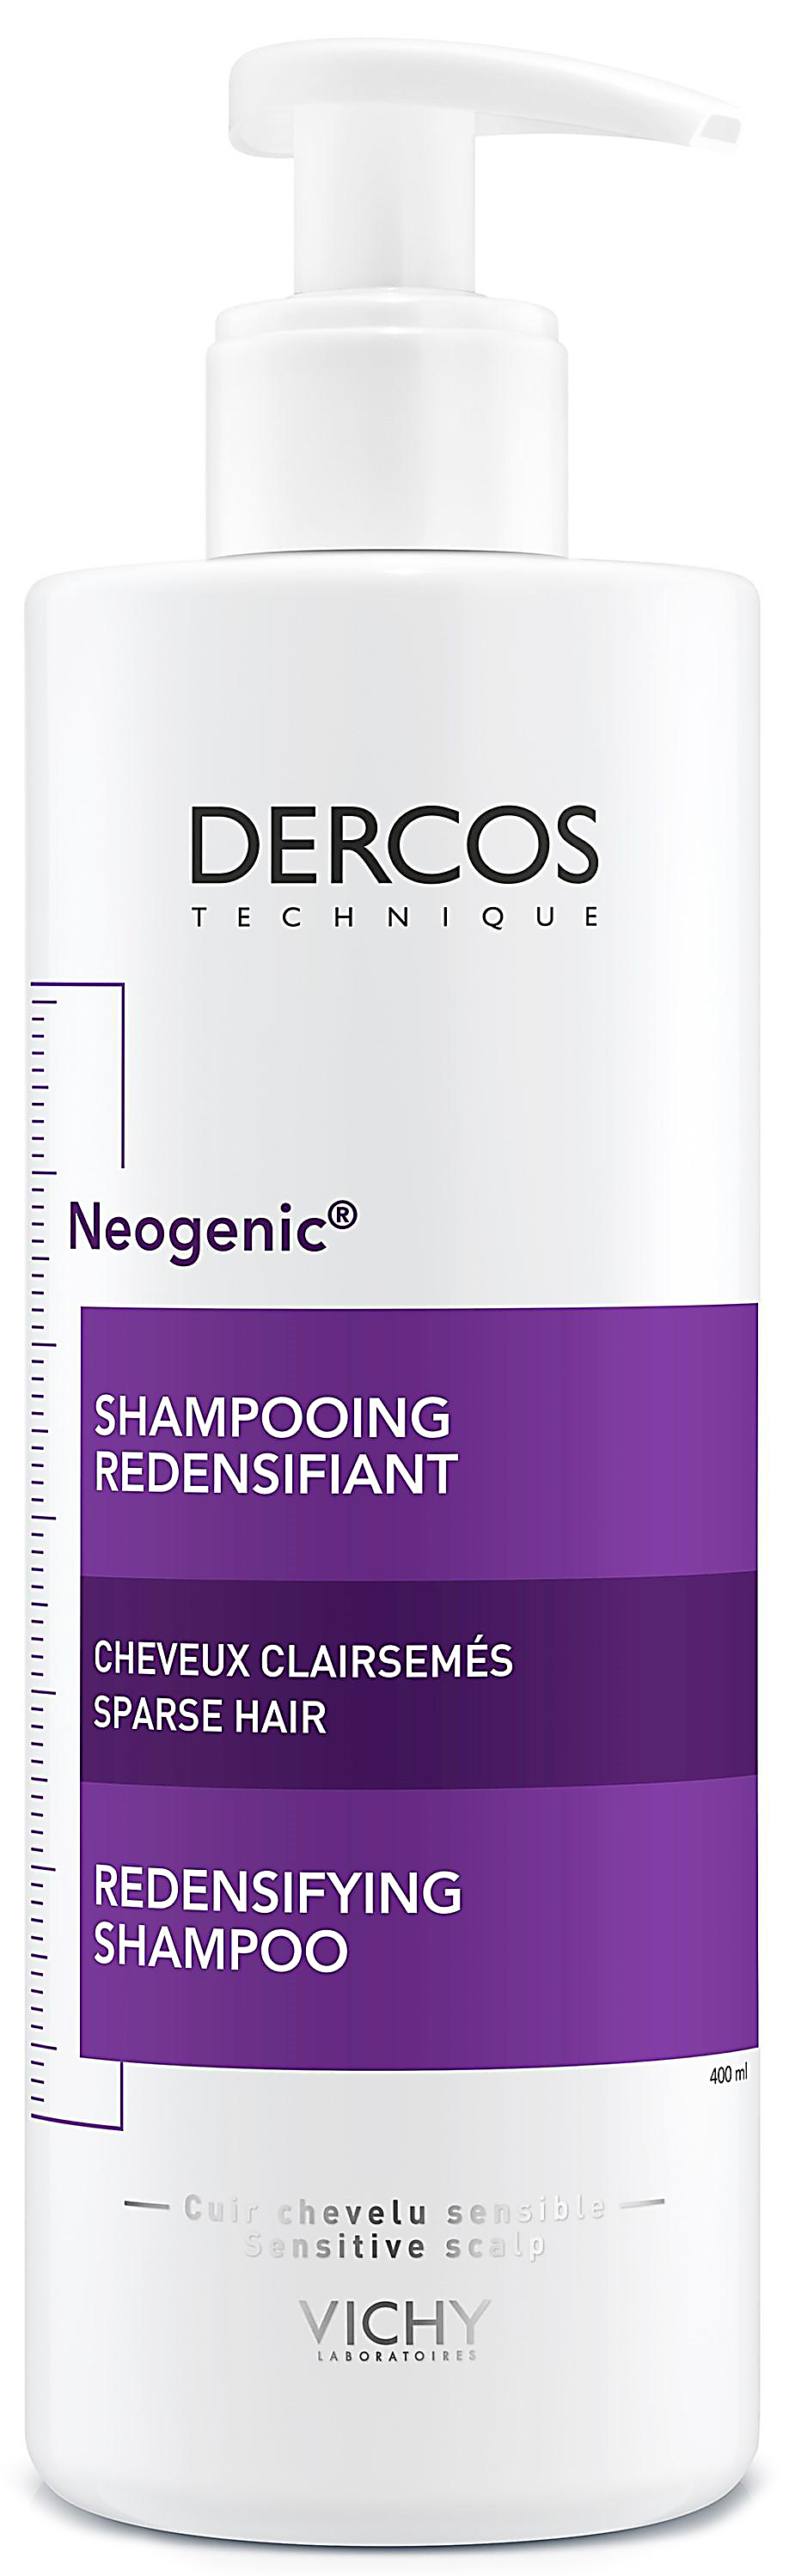 Dercos neogenic шампунь для повышения густоты волос 400мл Vichy (Виши)